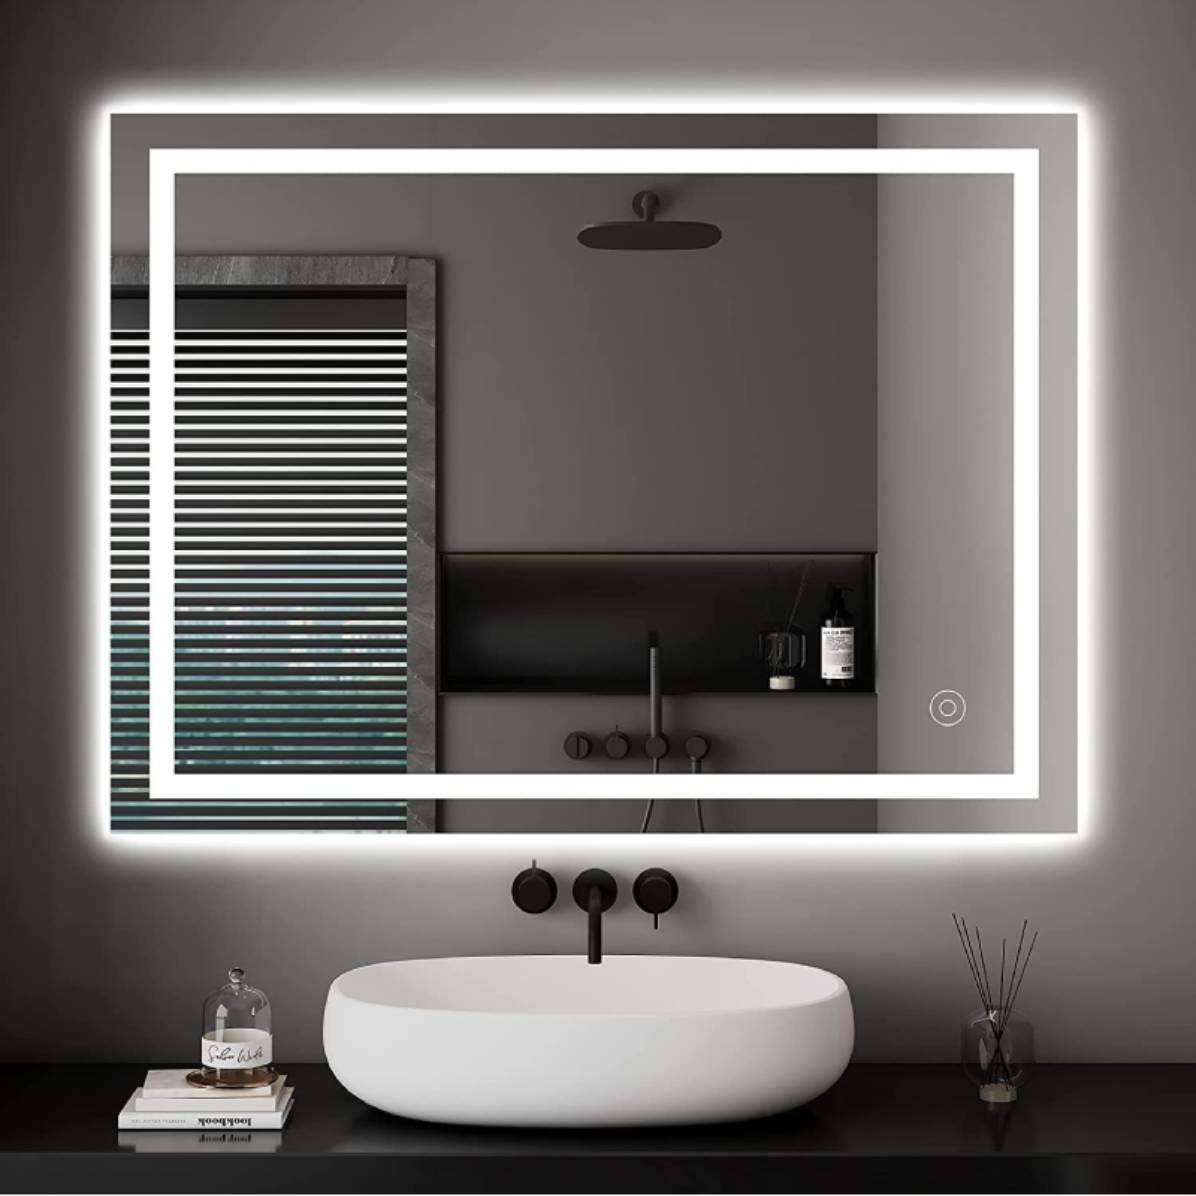 Transforma el teu bany amb aquest mirall amb llum led que té Amazon